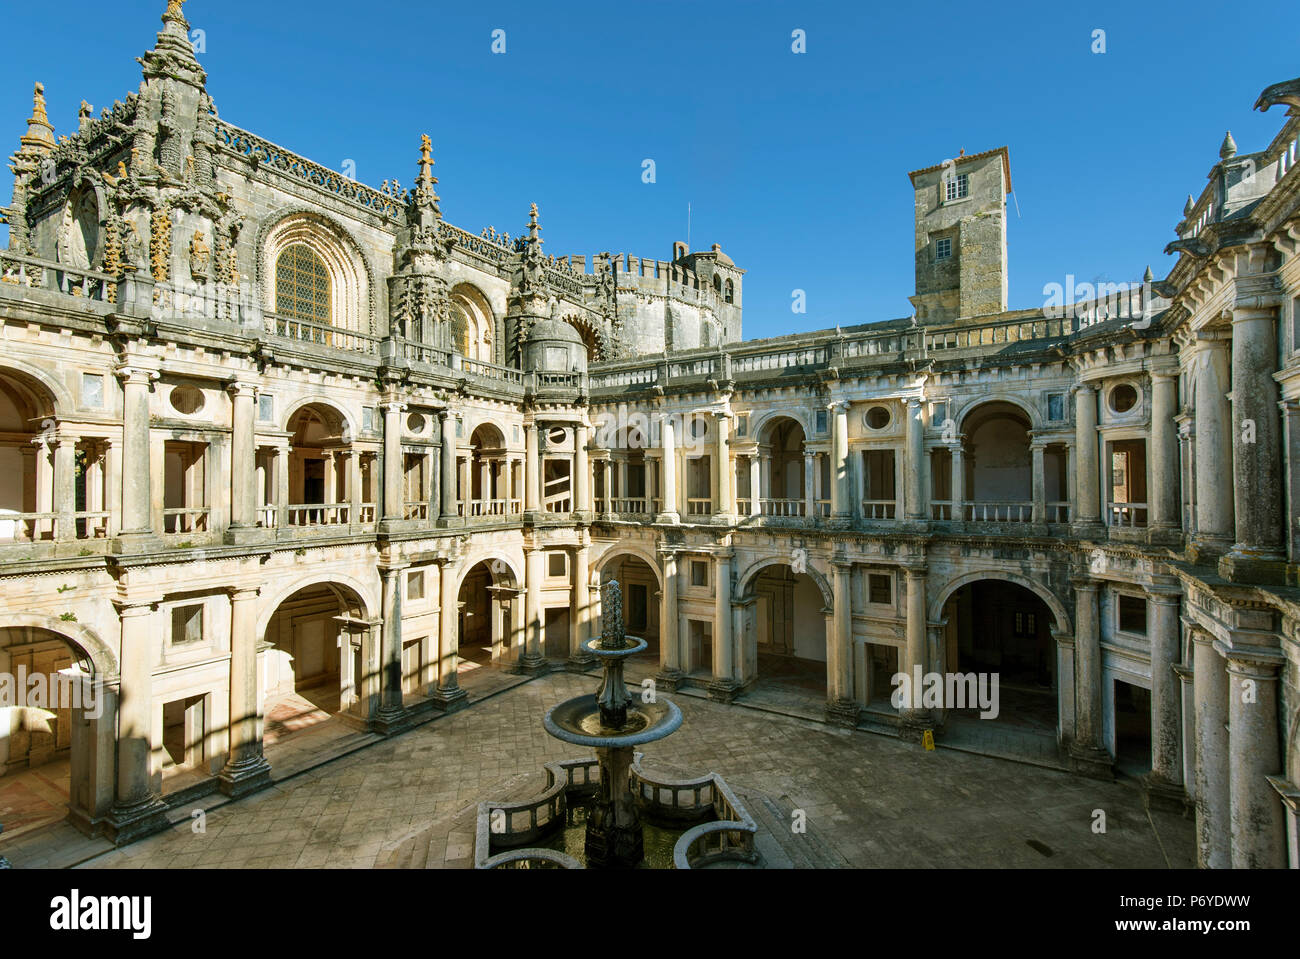 El Claustro Principal es una obra del convento renacentista construido por el Rey Juan III. Convento de Cristo, tomar. Portugal Foto de stock